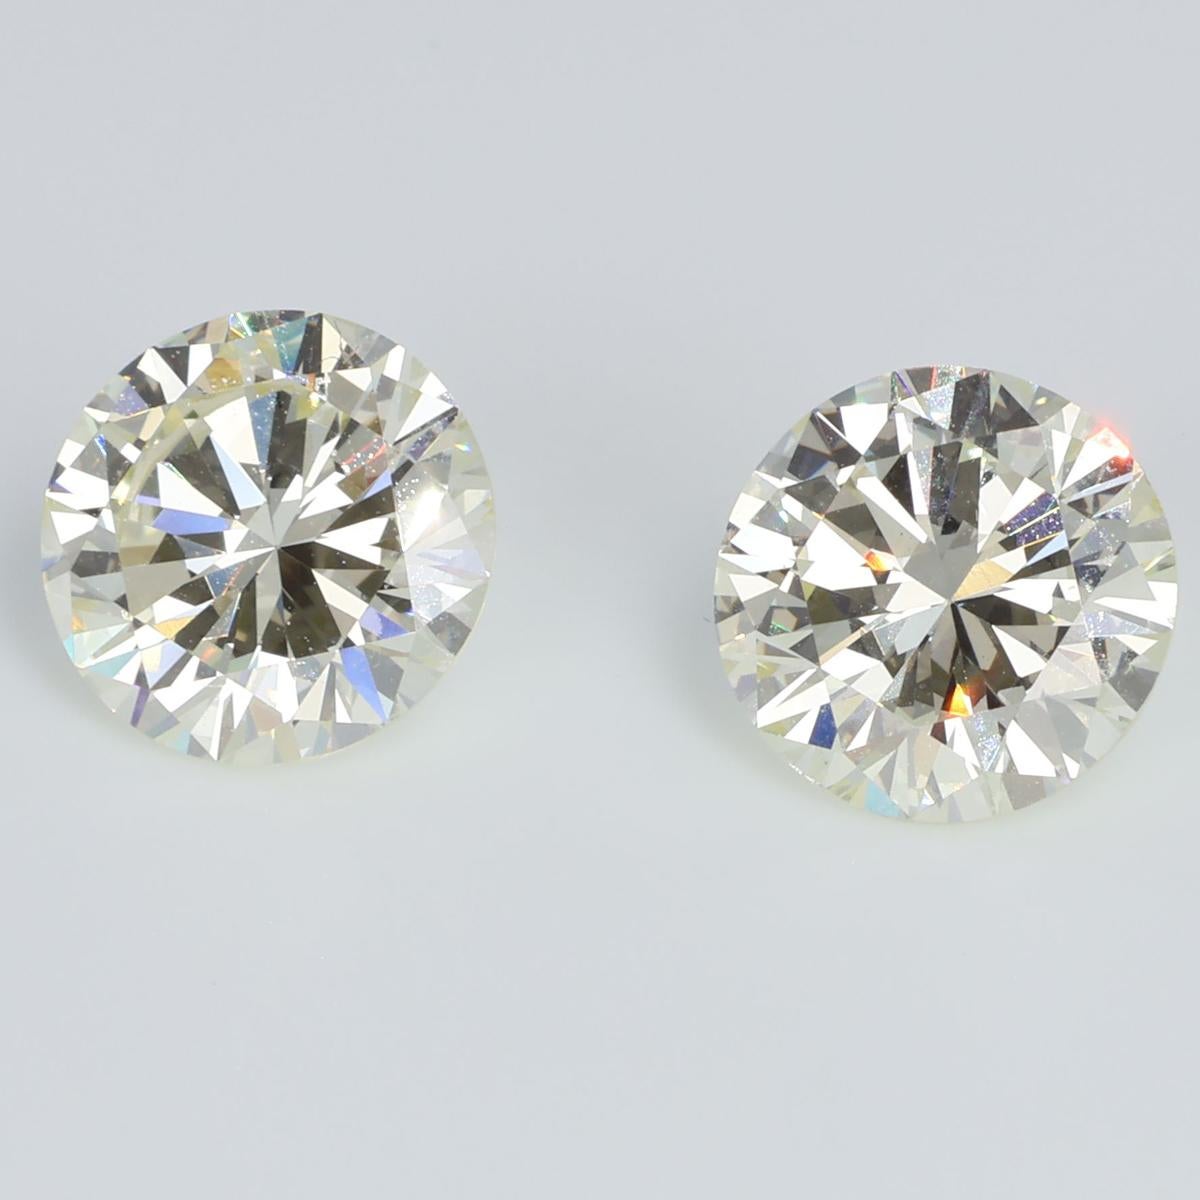 Diese Zwillingsdiamanten von je 2,12 Karat sind ein Duett aus Glanz und subtilen Farbtönen. Sie tanzen in einem ätherischen Licht und fangen die Essenz der Raffinesse ein. Mit einer Reinheit von VS1 weisen sie eine kristalline Reinheit auf, die die